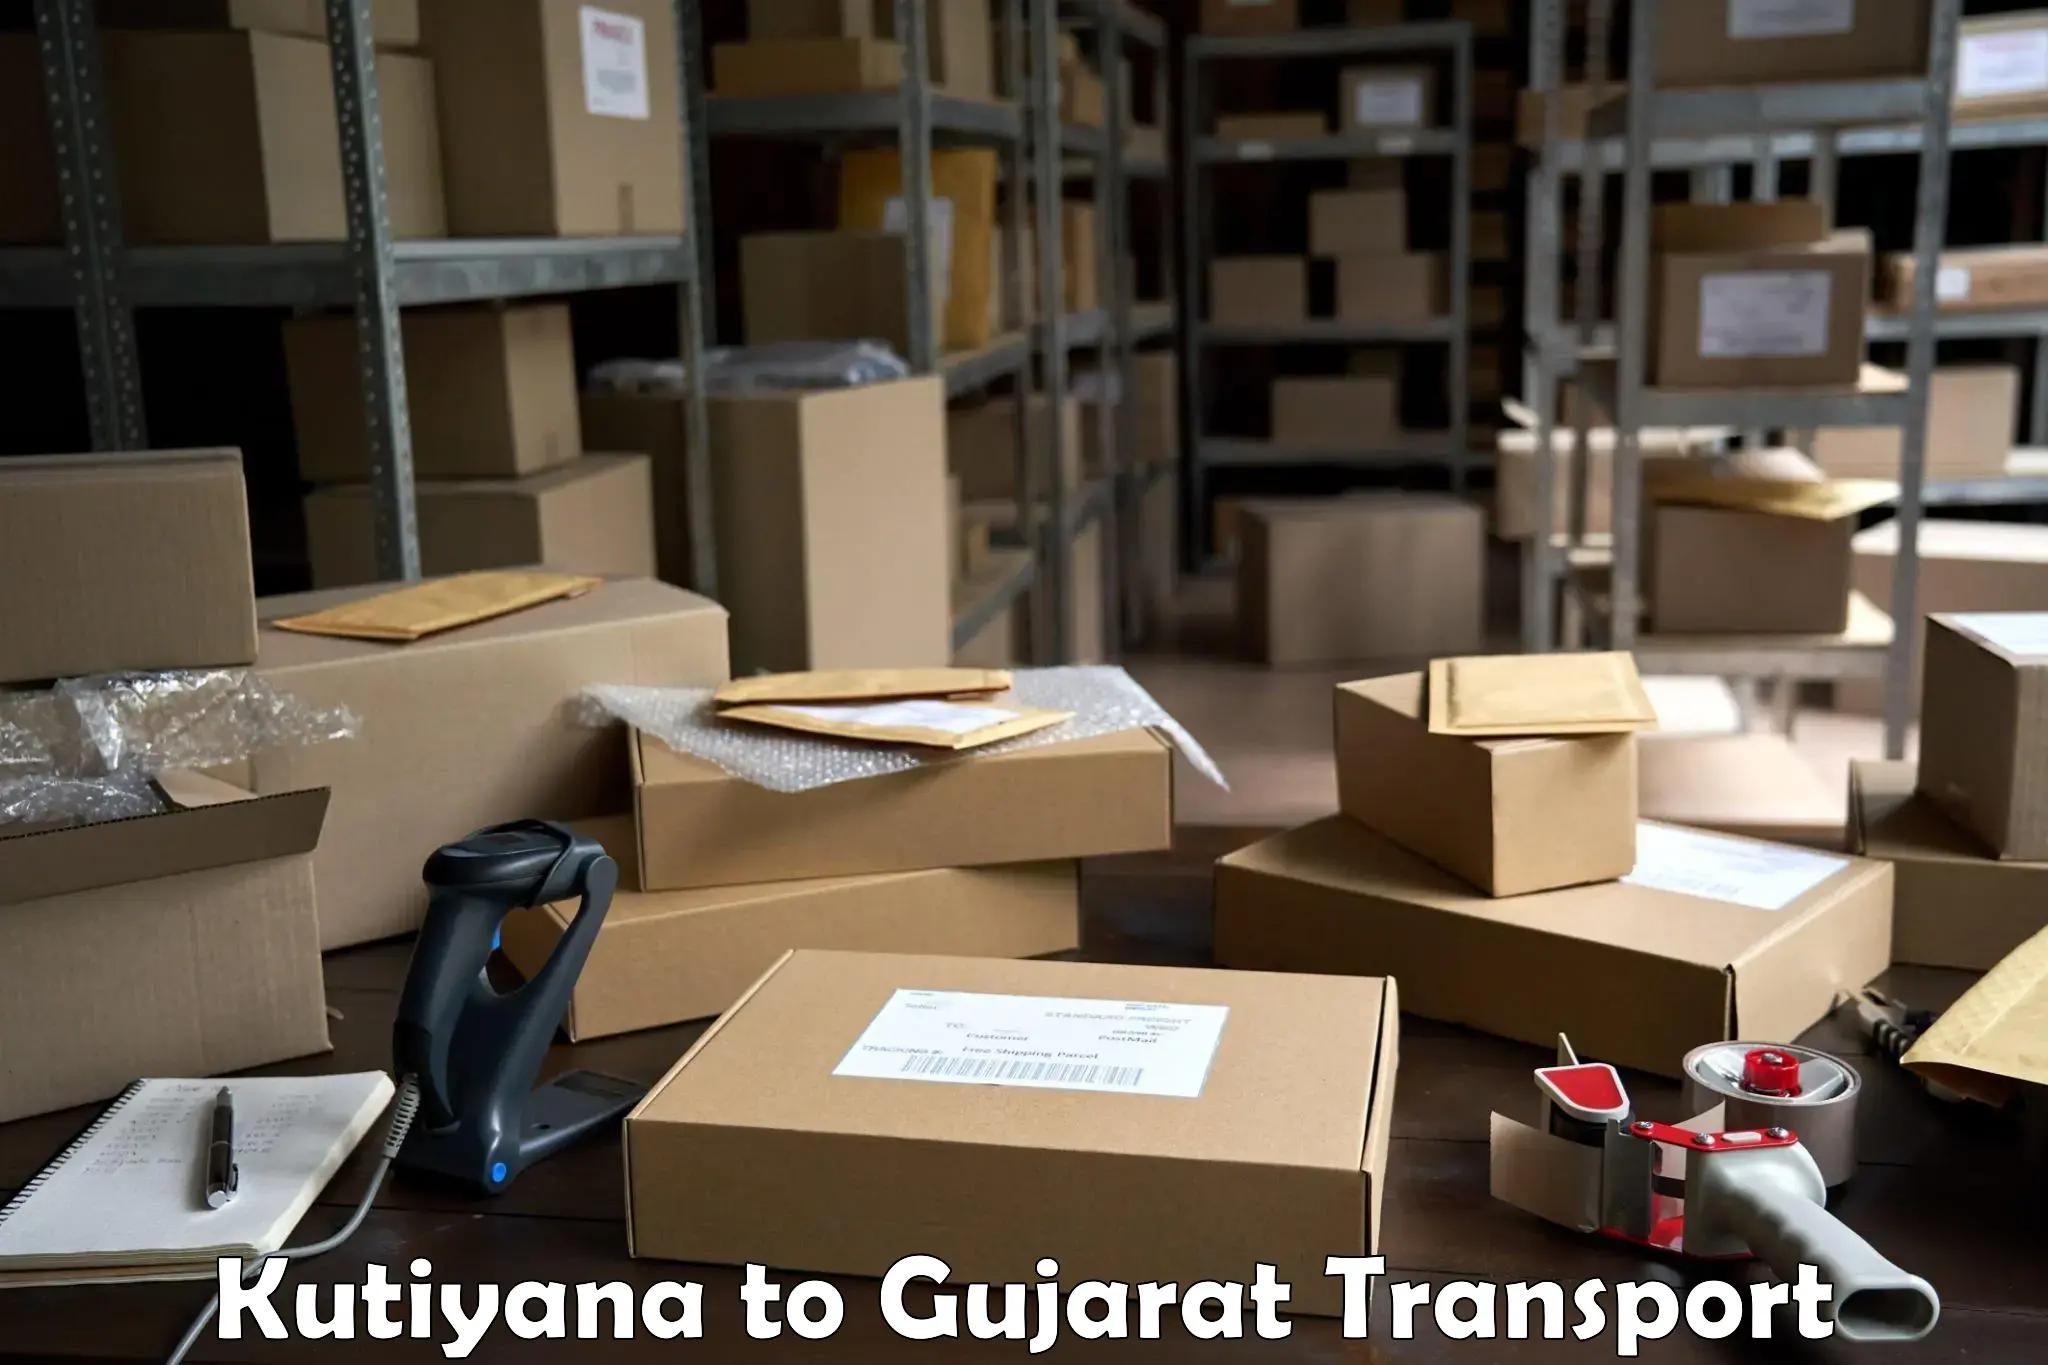 Container transport service Kutiyana to Mundra